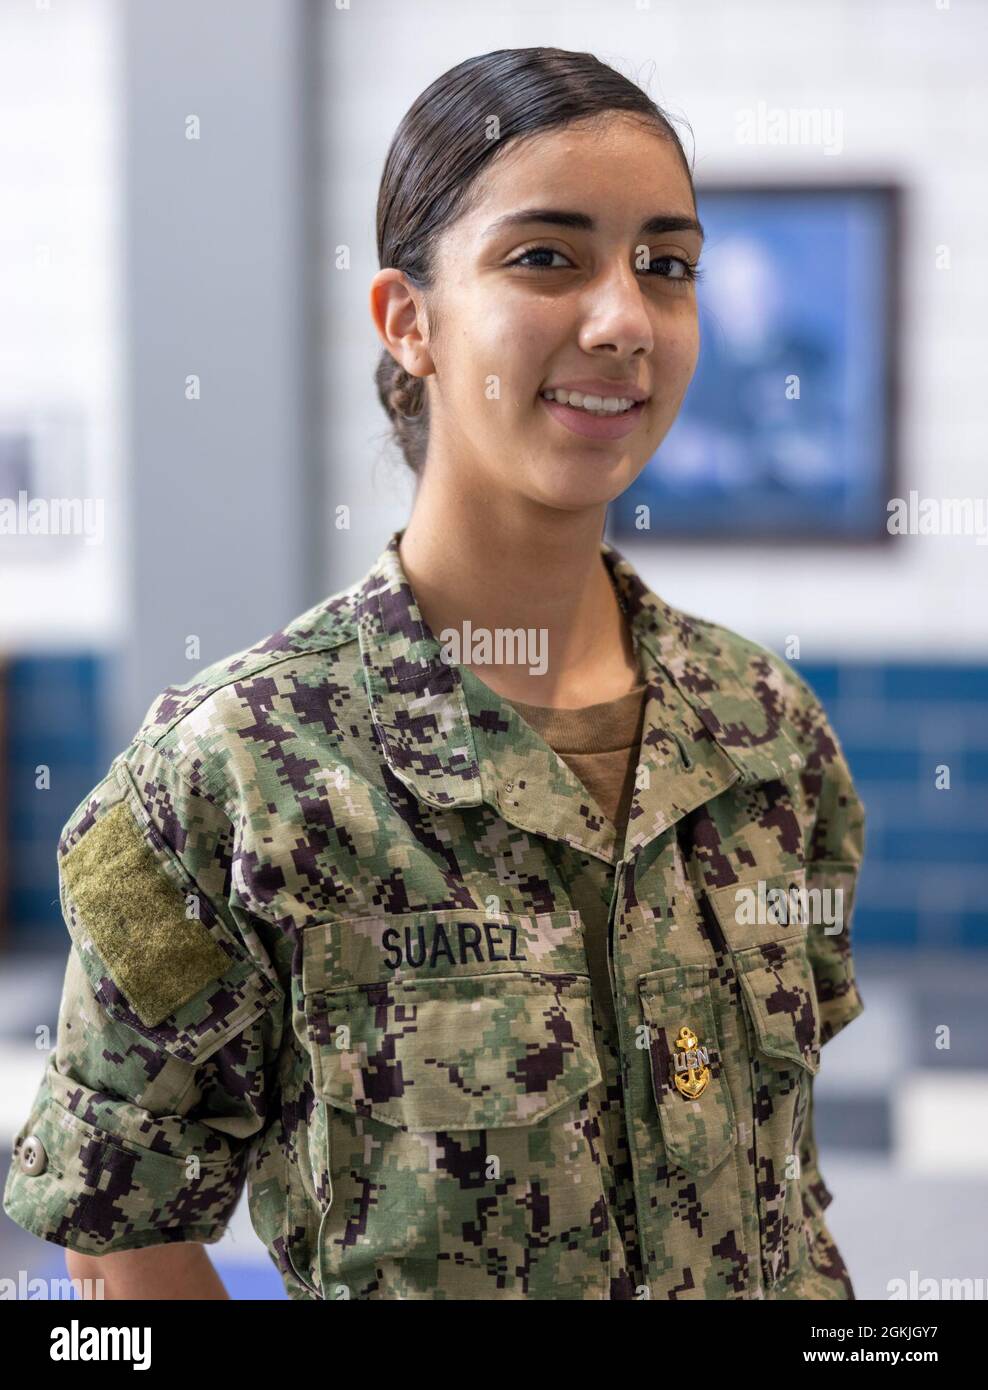 Yara Lizbeth Suarez, une recrue de la Marine, présente un portrait à l'intérieur d'un compartiment de la caserne de recrue USS Enterprise au sein de Recruit Training Command. Plus de 40,000 recrues s’entraînent chaque année dans le seul camp de la Marine. Banque D'Images